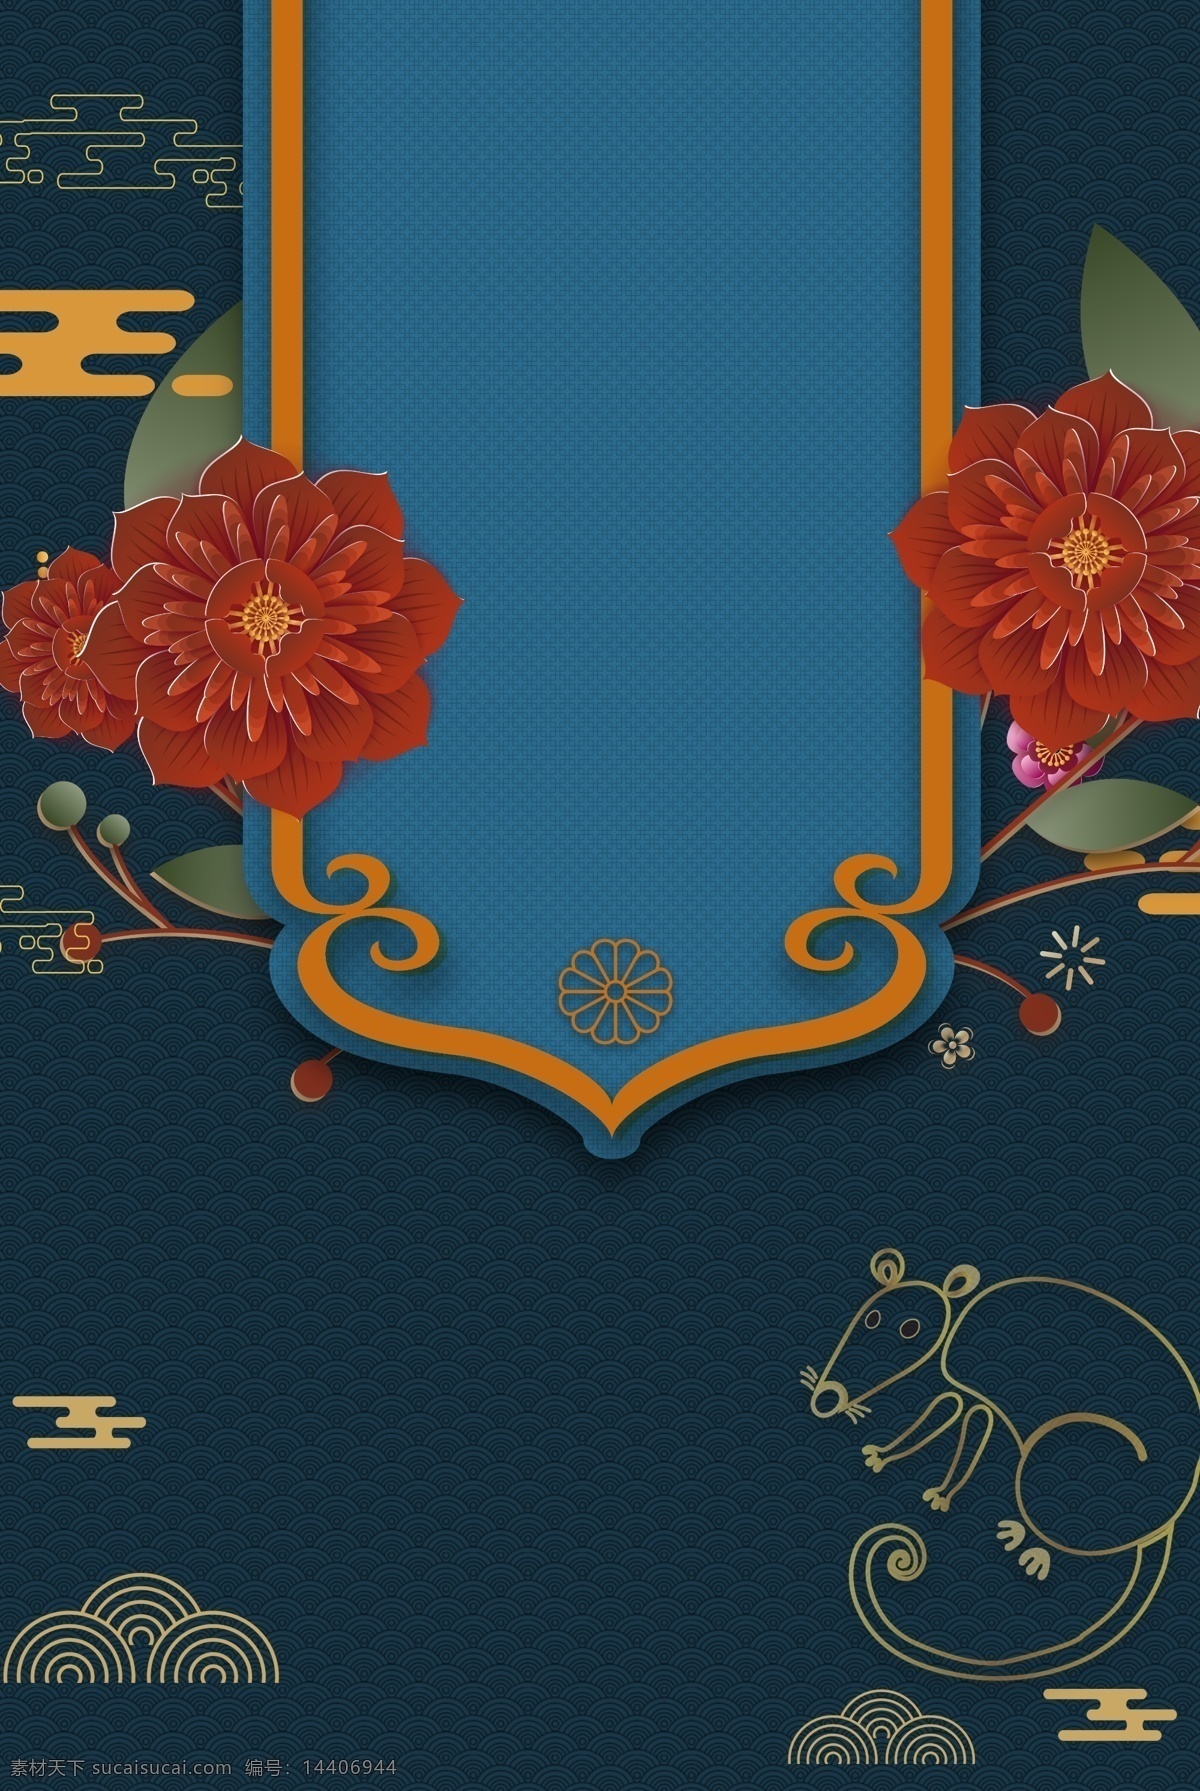 中国 风 鼠年 海报 中国风 剪纸 国潮 背景 立体花 蓝色 简约 时尚 分层 背景素材